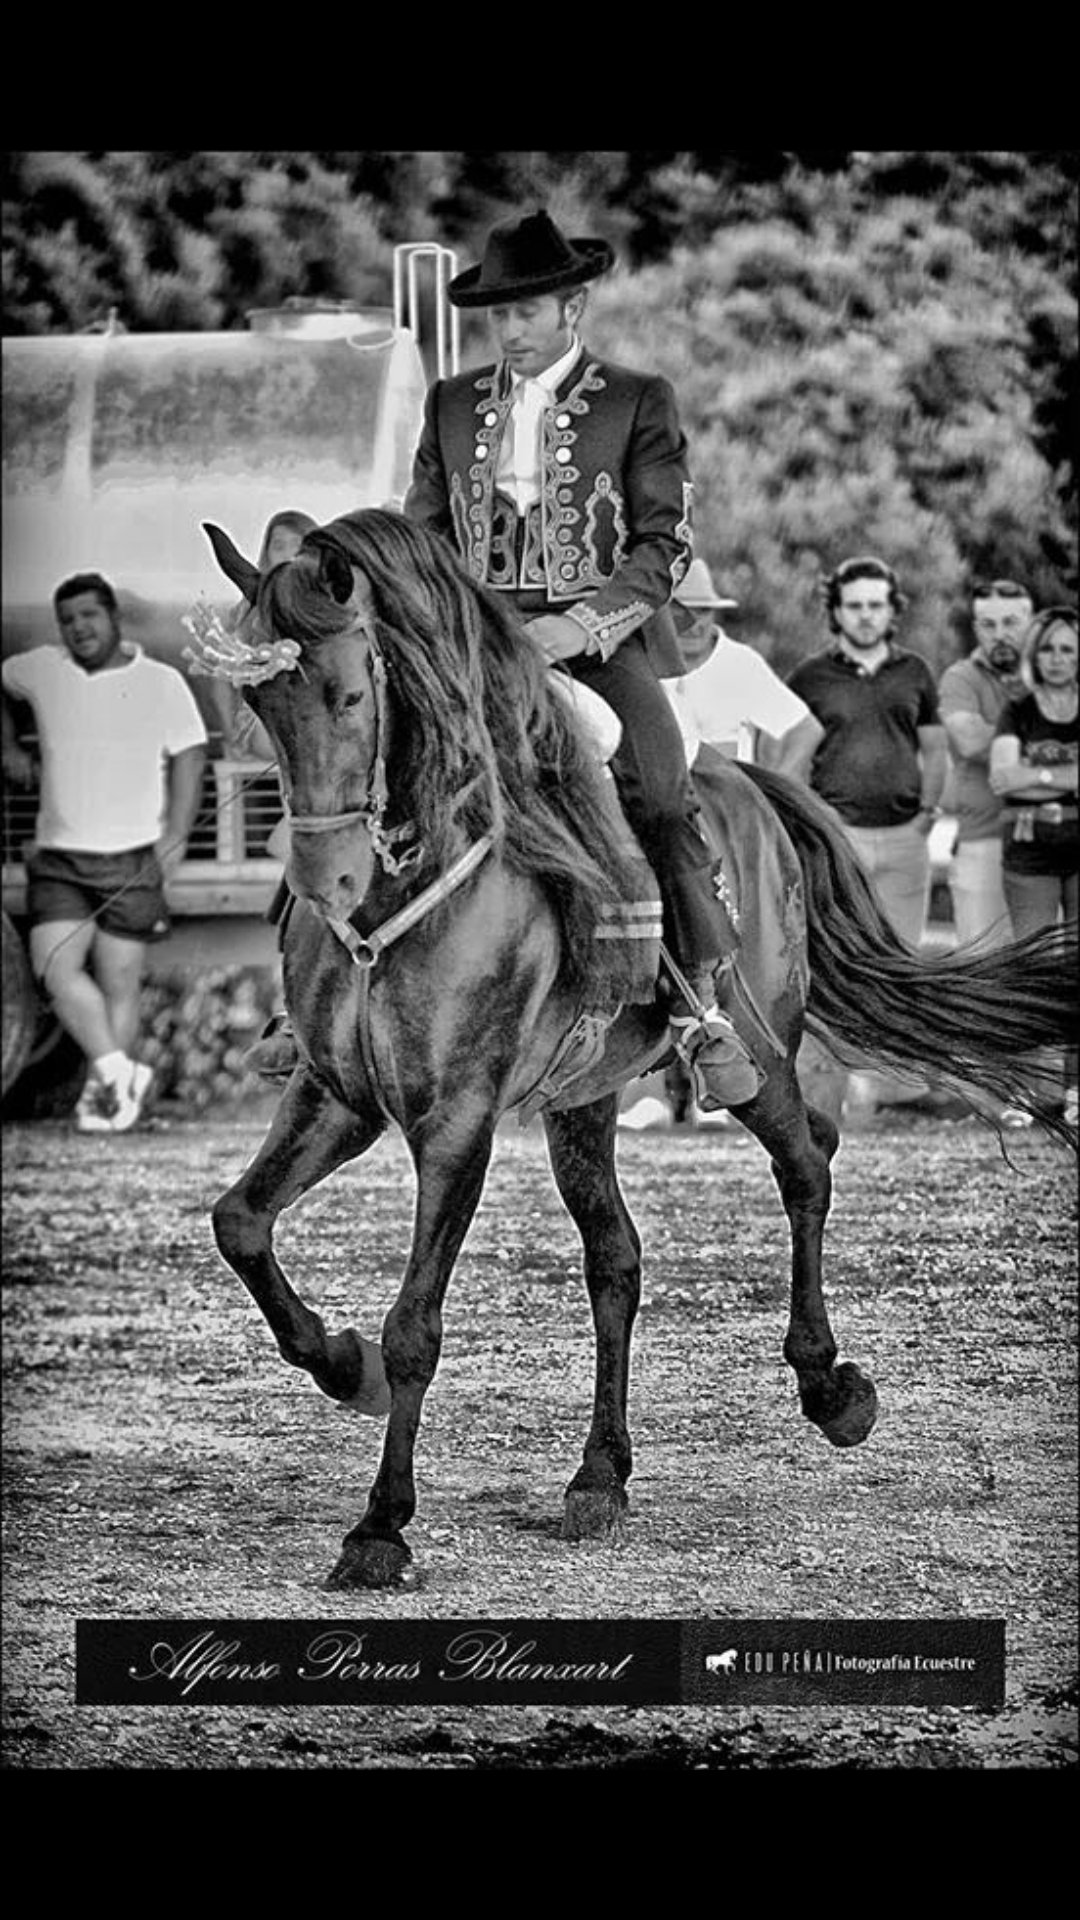 Images Escuela de Equitación Alfonso Porras Maestre